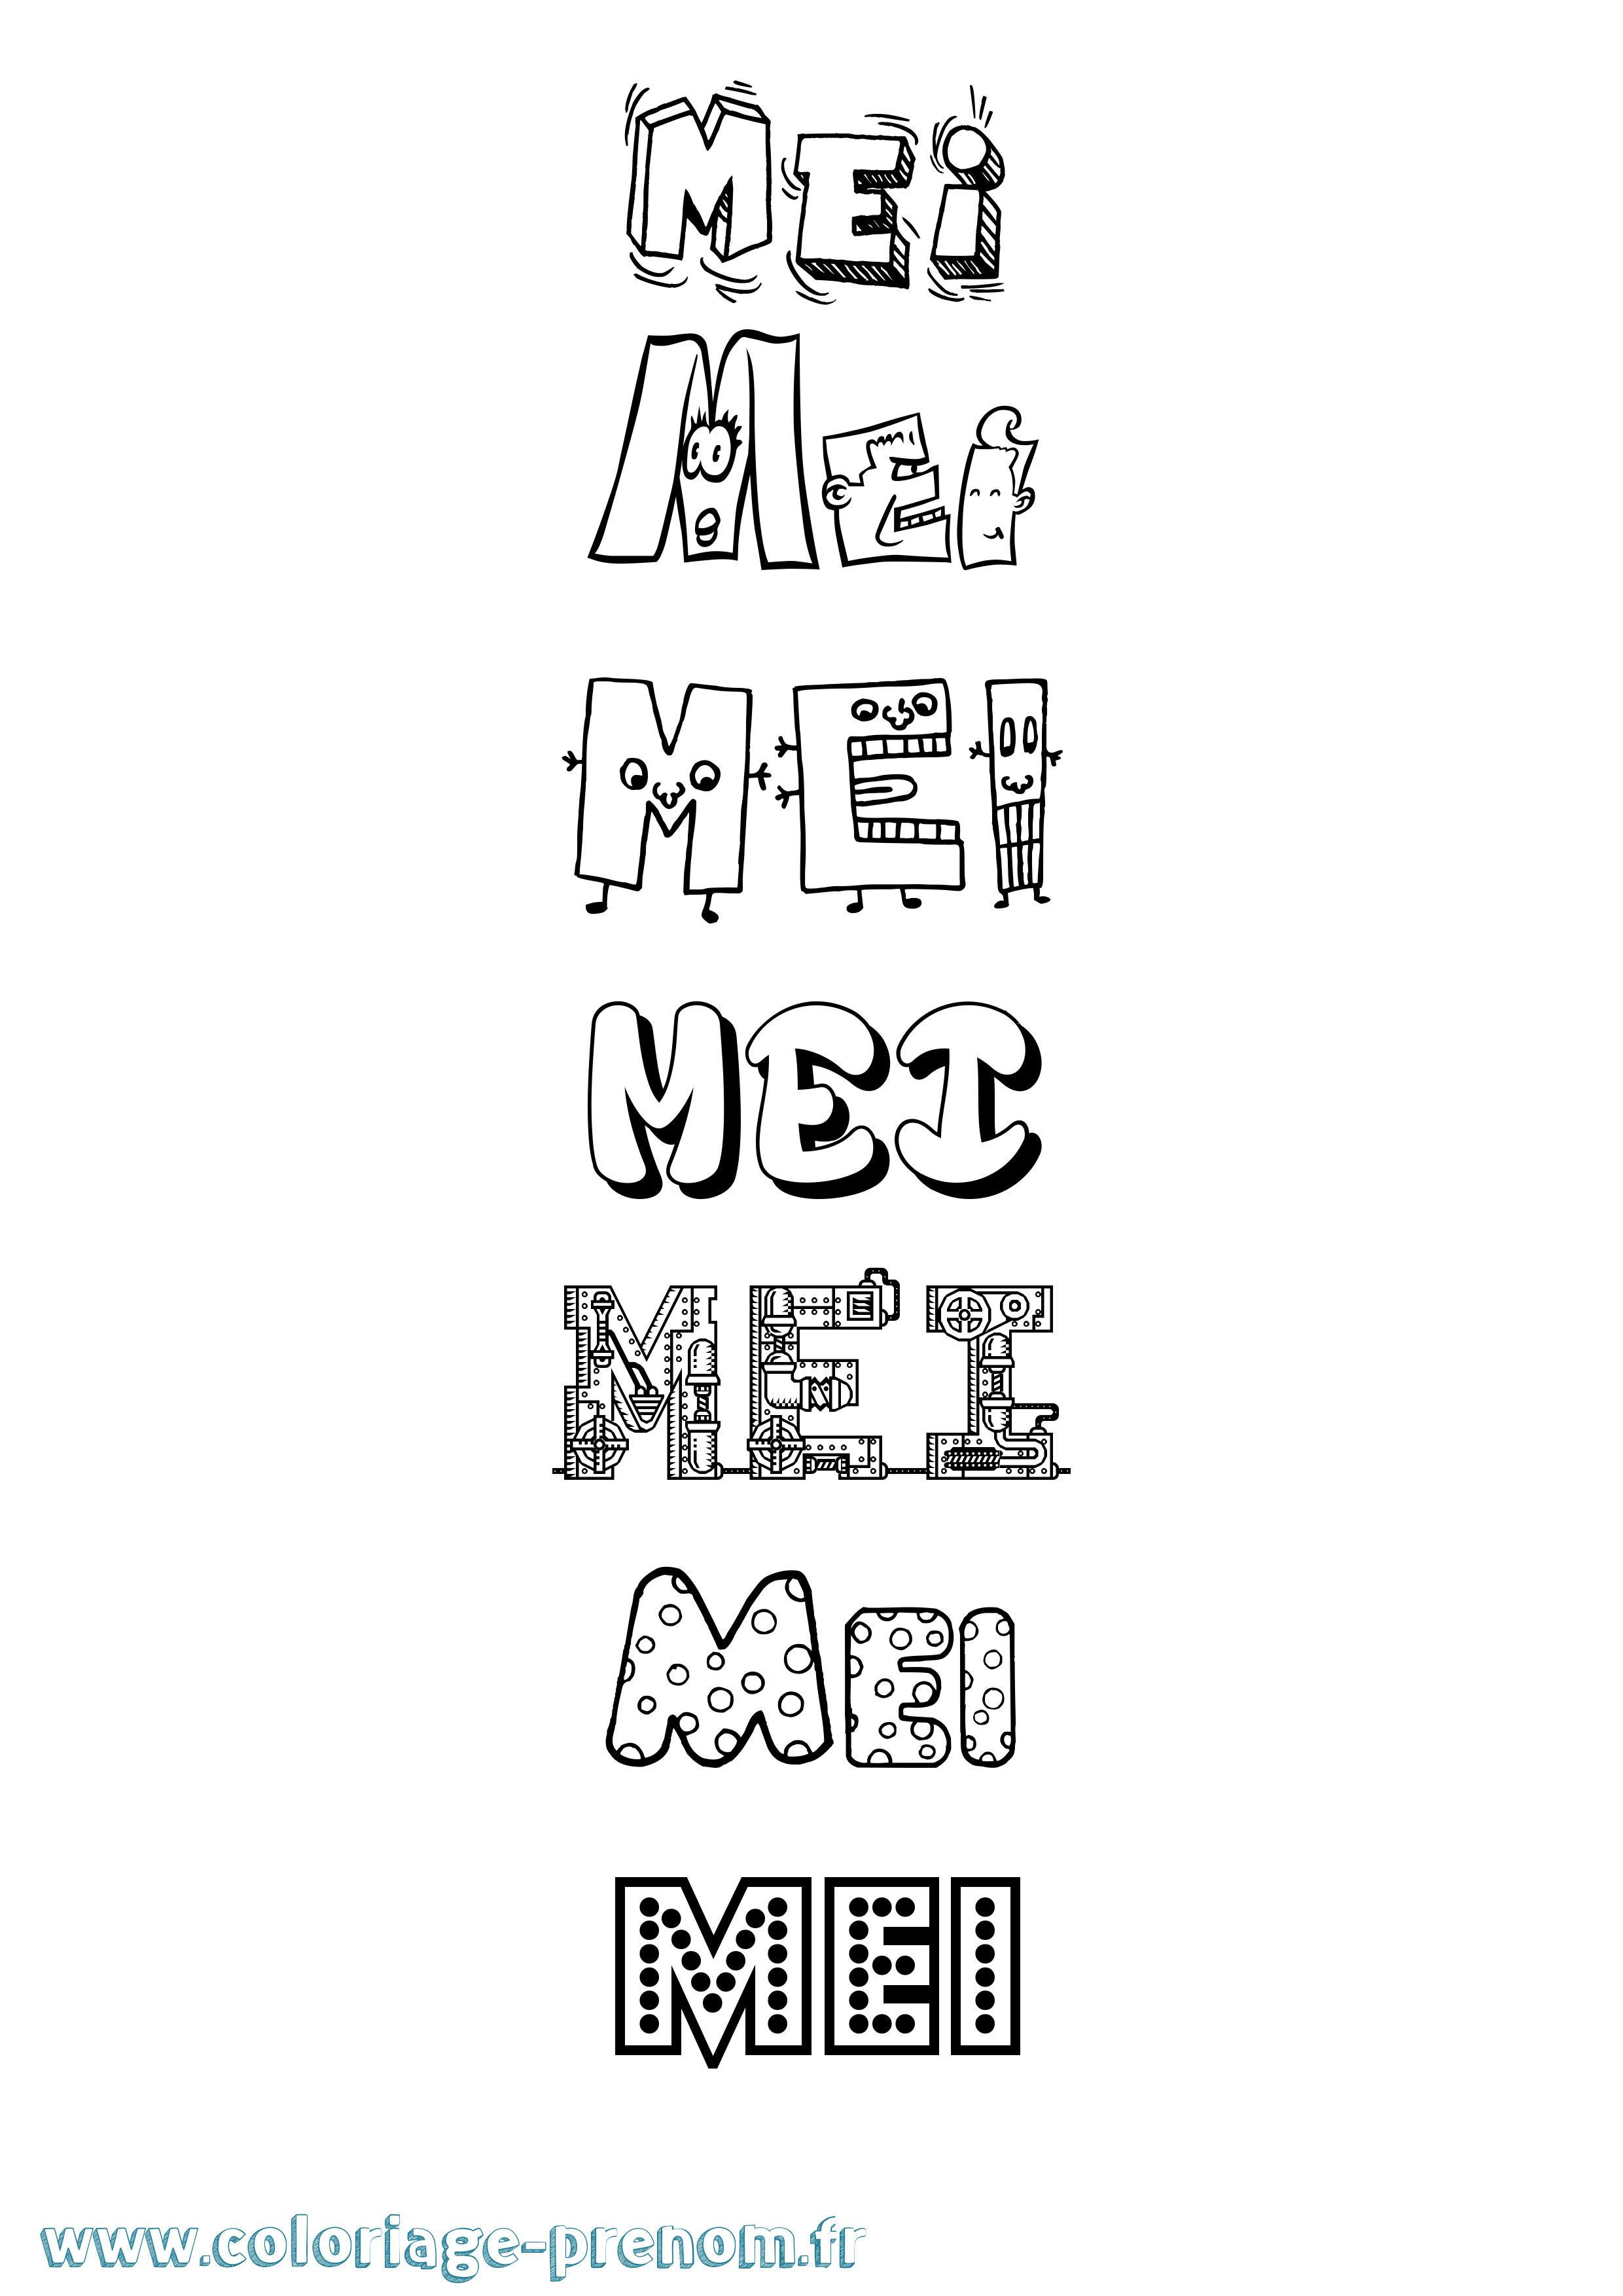 Coloriage prénom Mei Fun